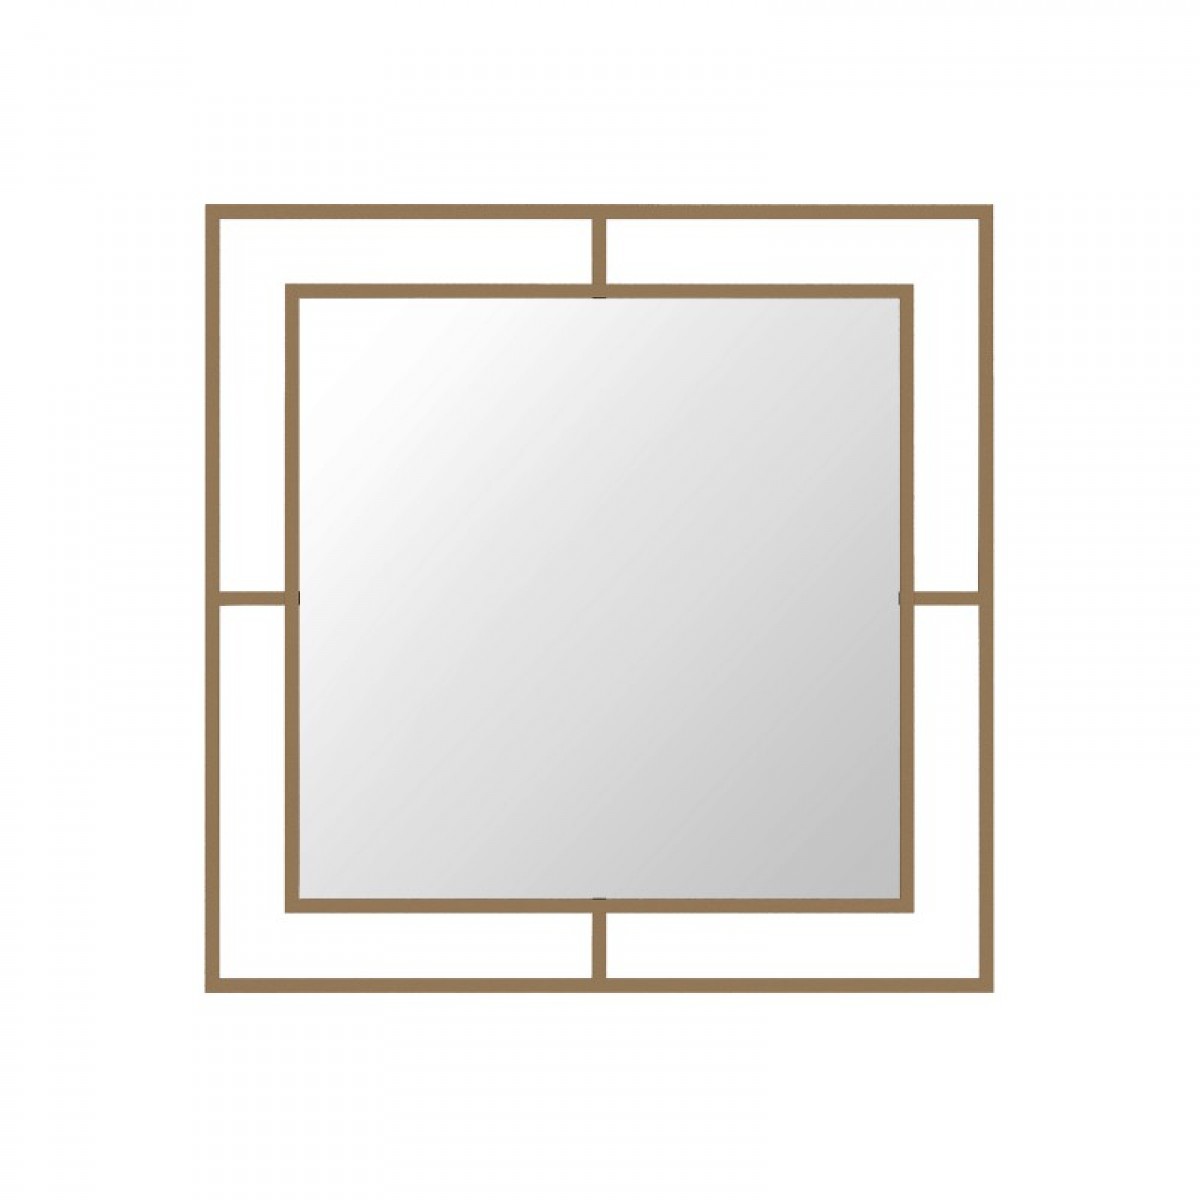 Καθρέφτης "BEAUTY" τετράγωνος από μέταλλο σε χρυσό χρώμα 58,6x58,6x2